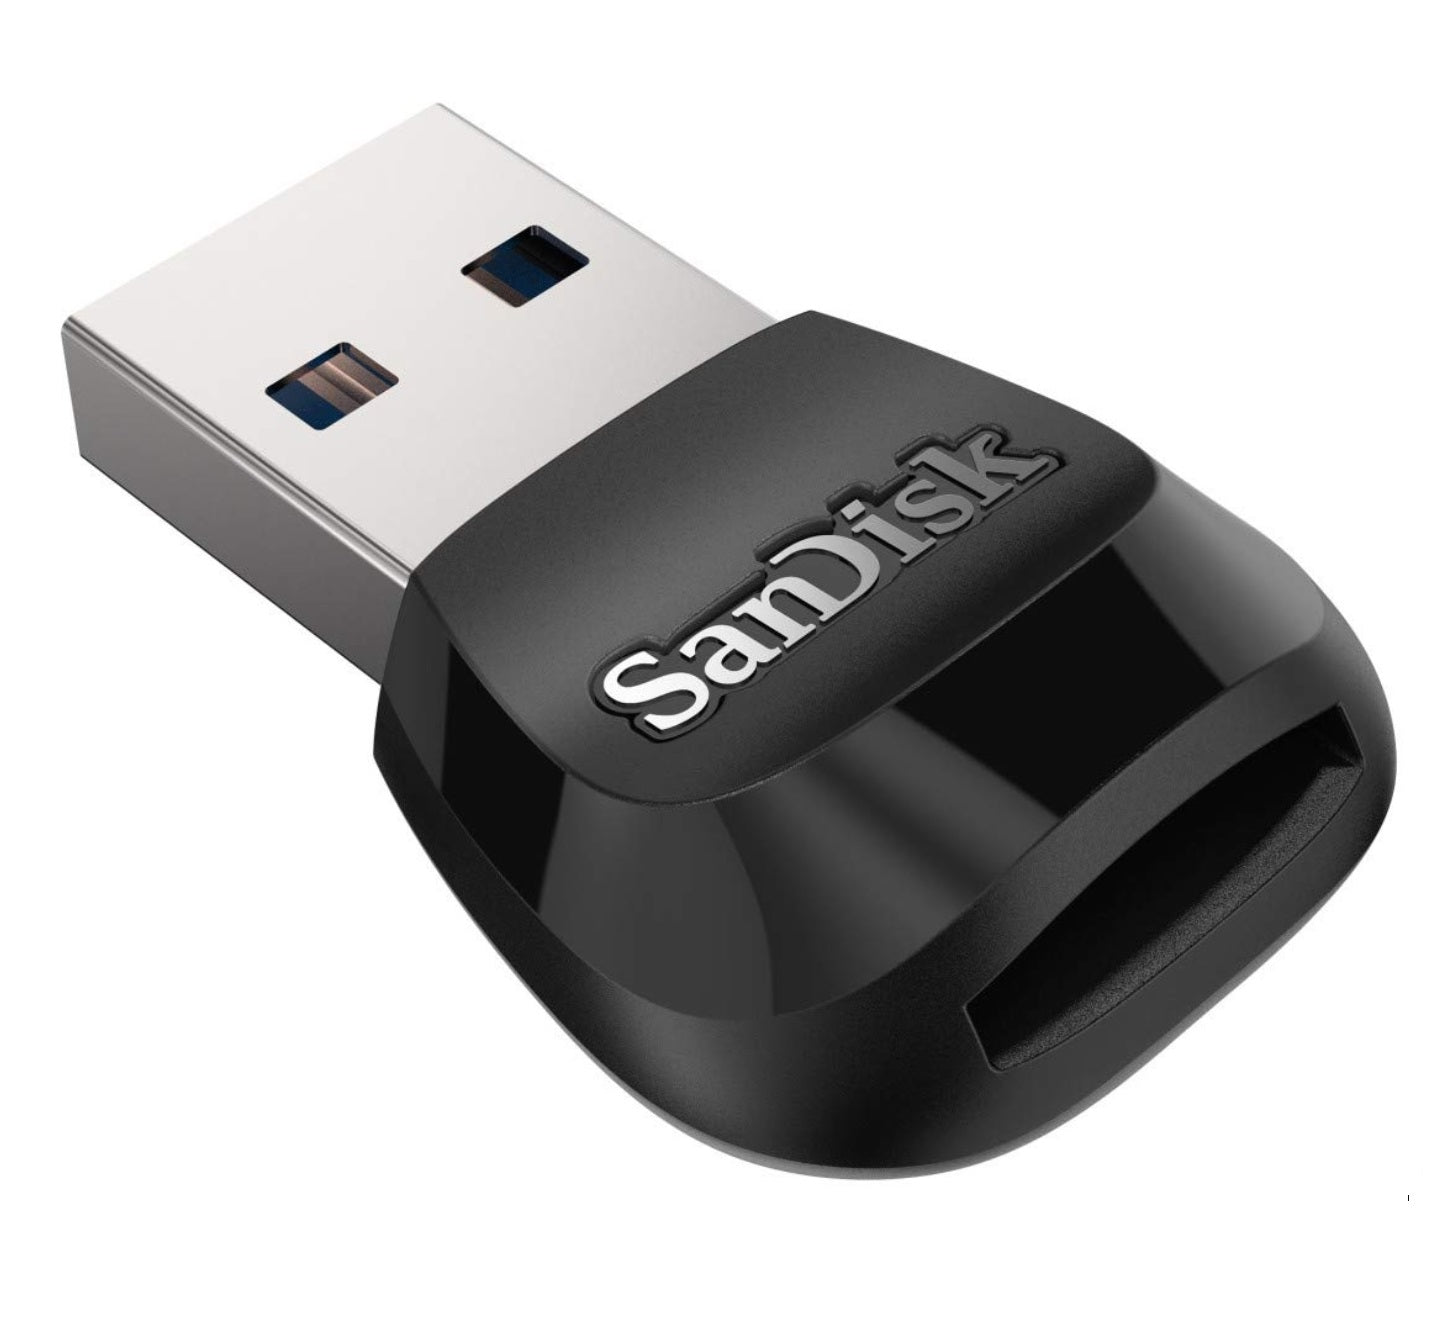 SanDisk MobileMate USB 3.0 microSD Card Reader - SDDR-B531-GN6NN (Like New, Open Box)